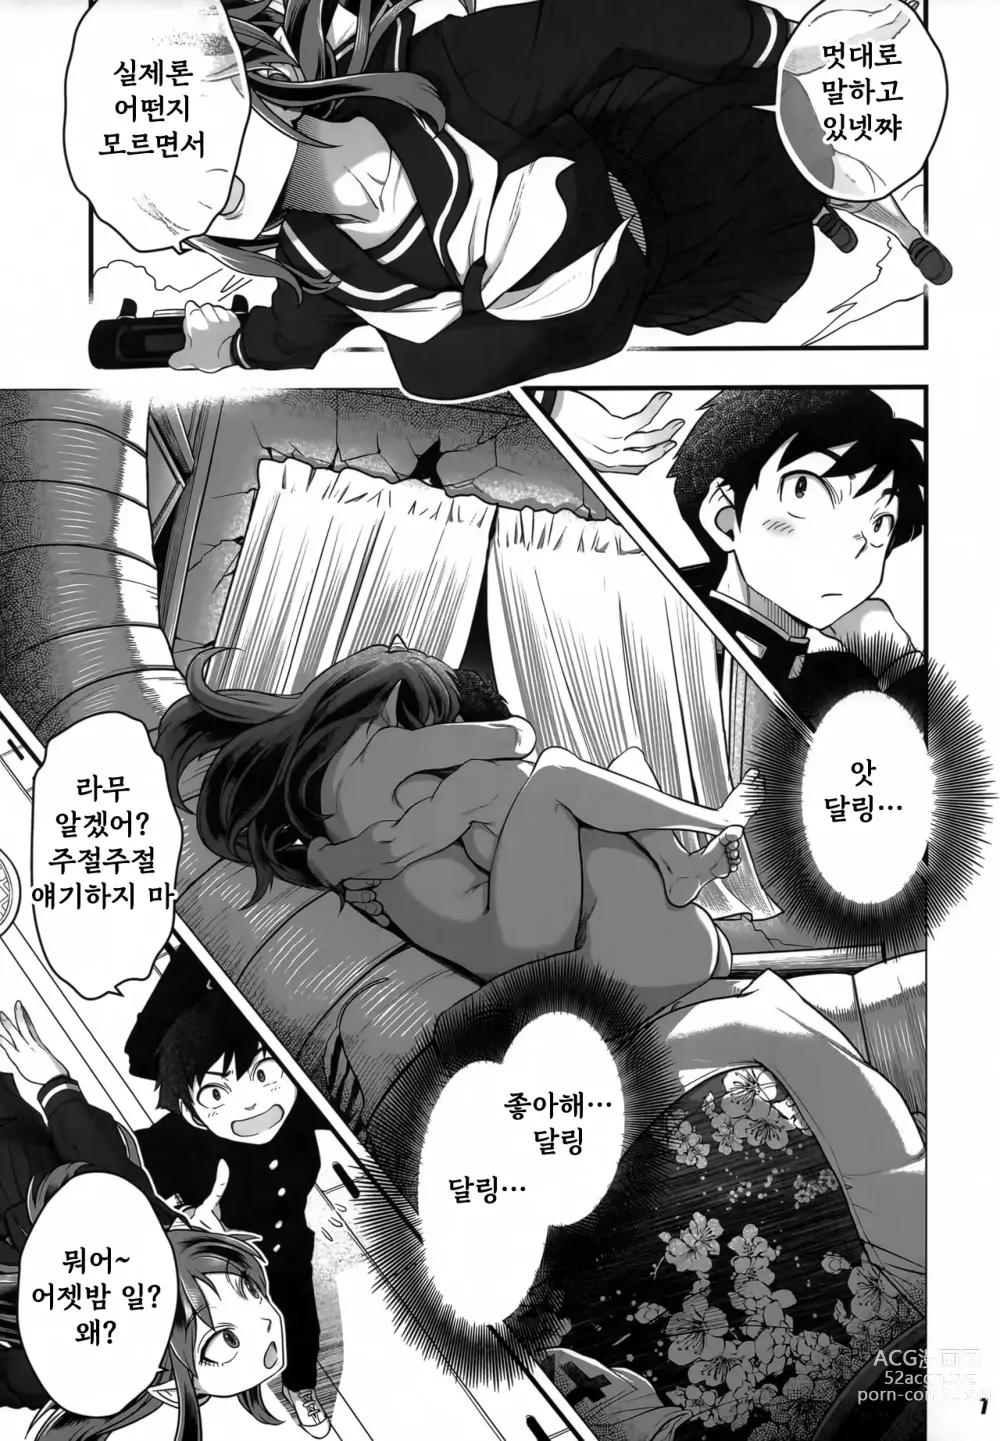 Page 7 of doujinshi Urusei Yatsura Epilogue of Boy meets Girl